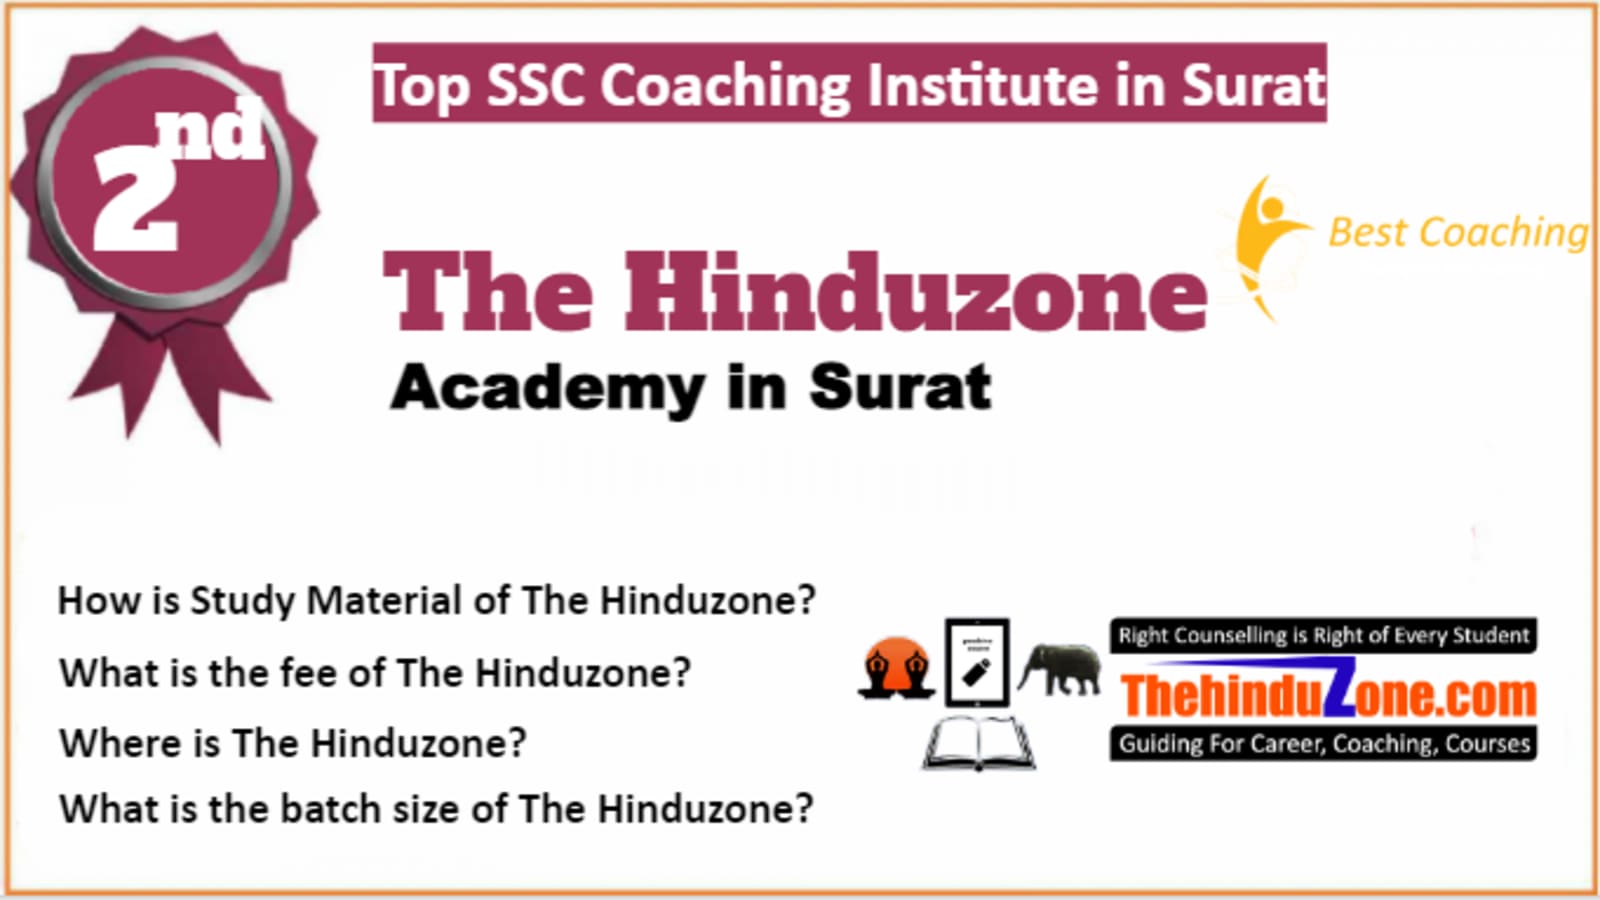 Rank 2 Best SSC Coaching in Surat